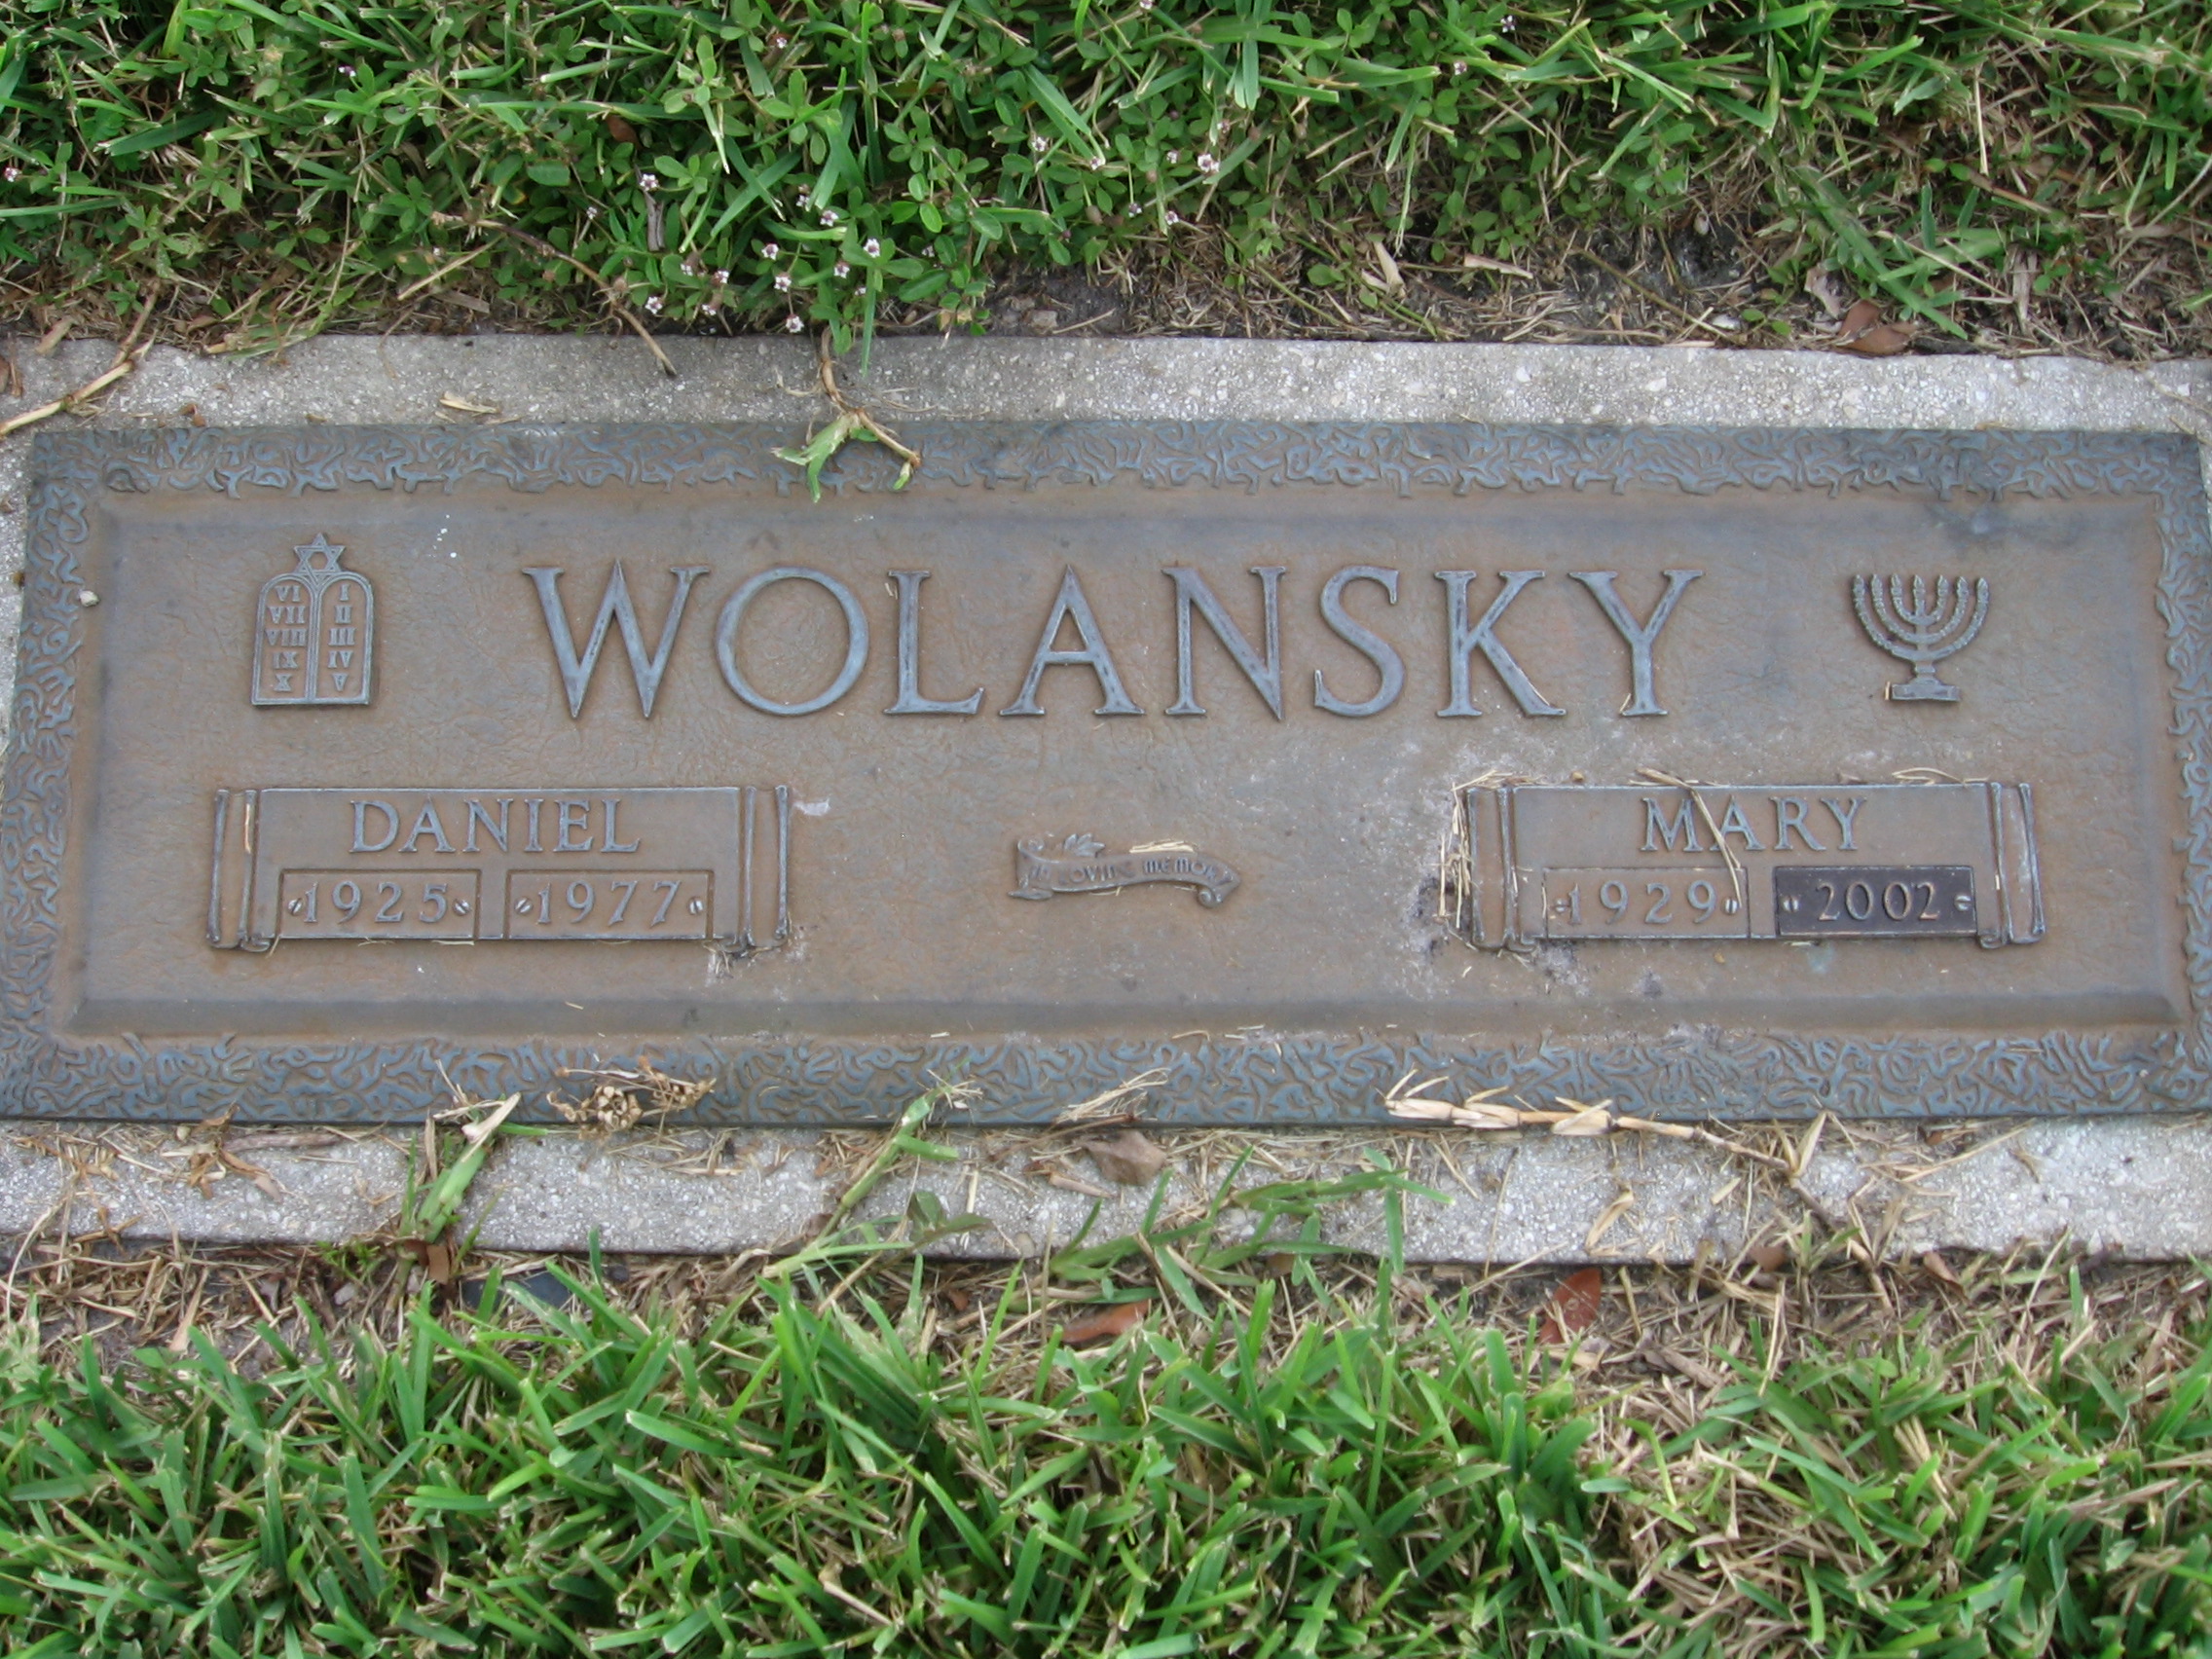 Mary Wolansky